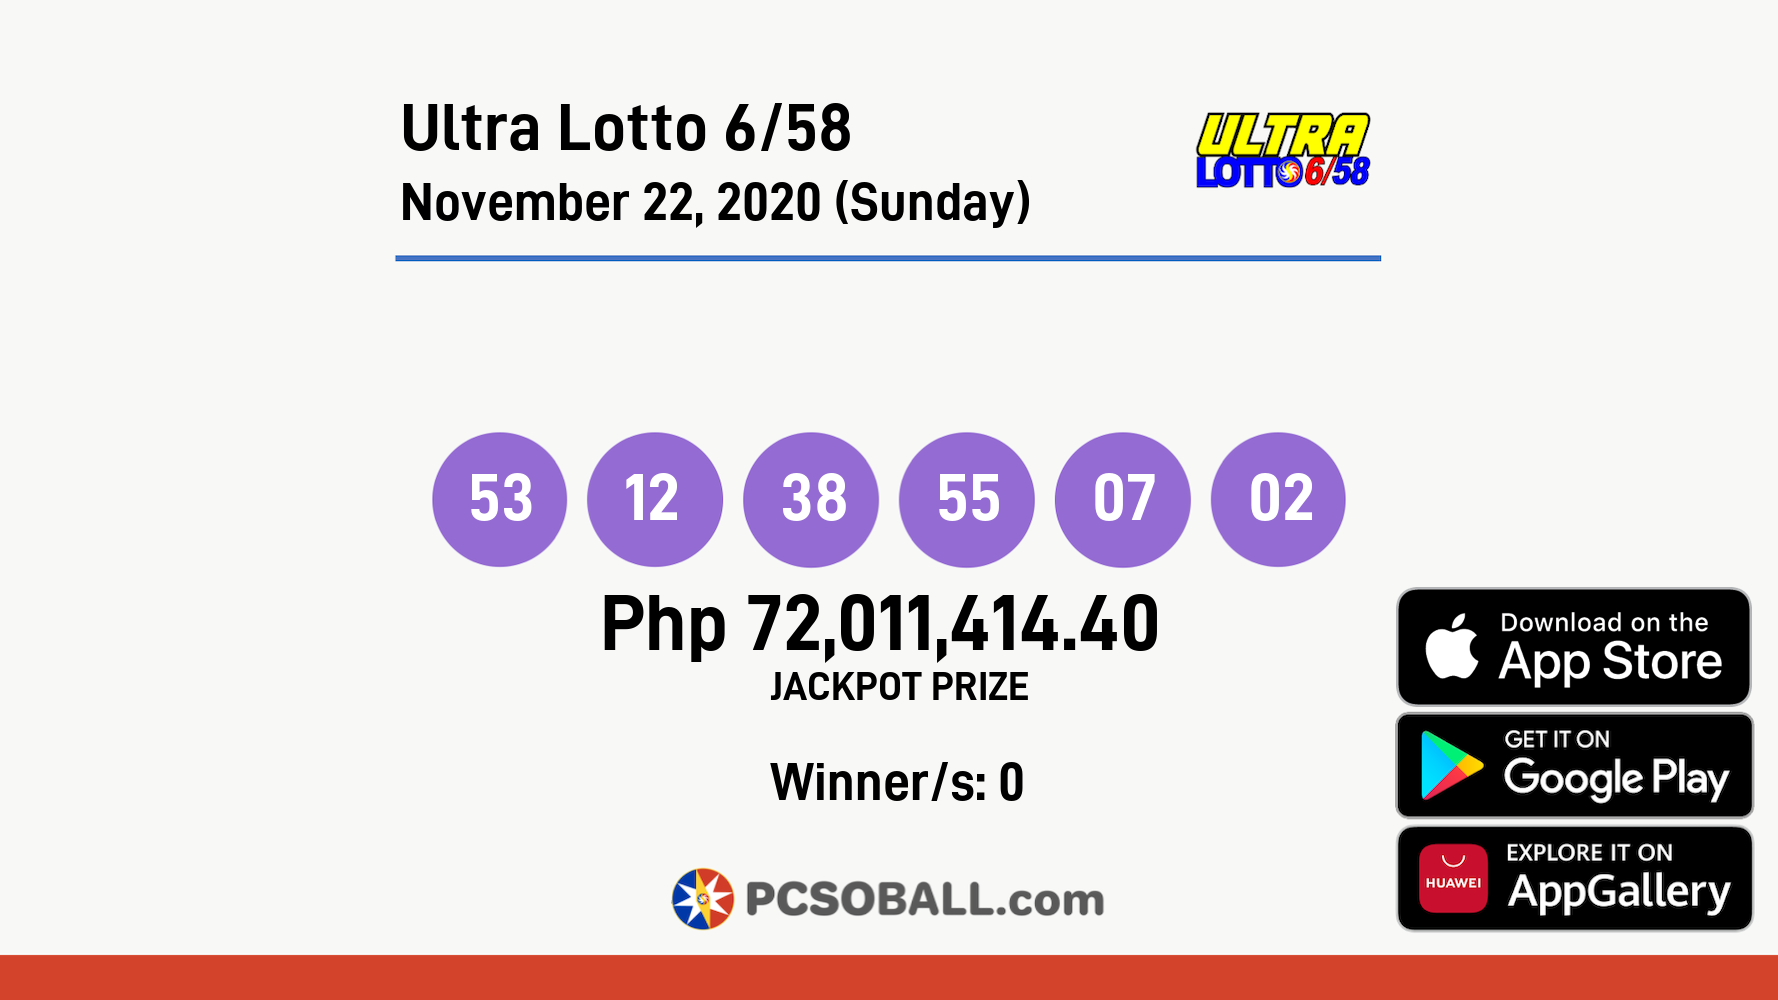 Ultra Lotto 6/58 November 22, 2020 (Sunday) Result